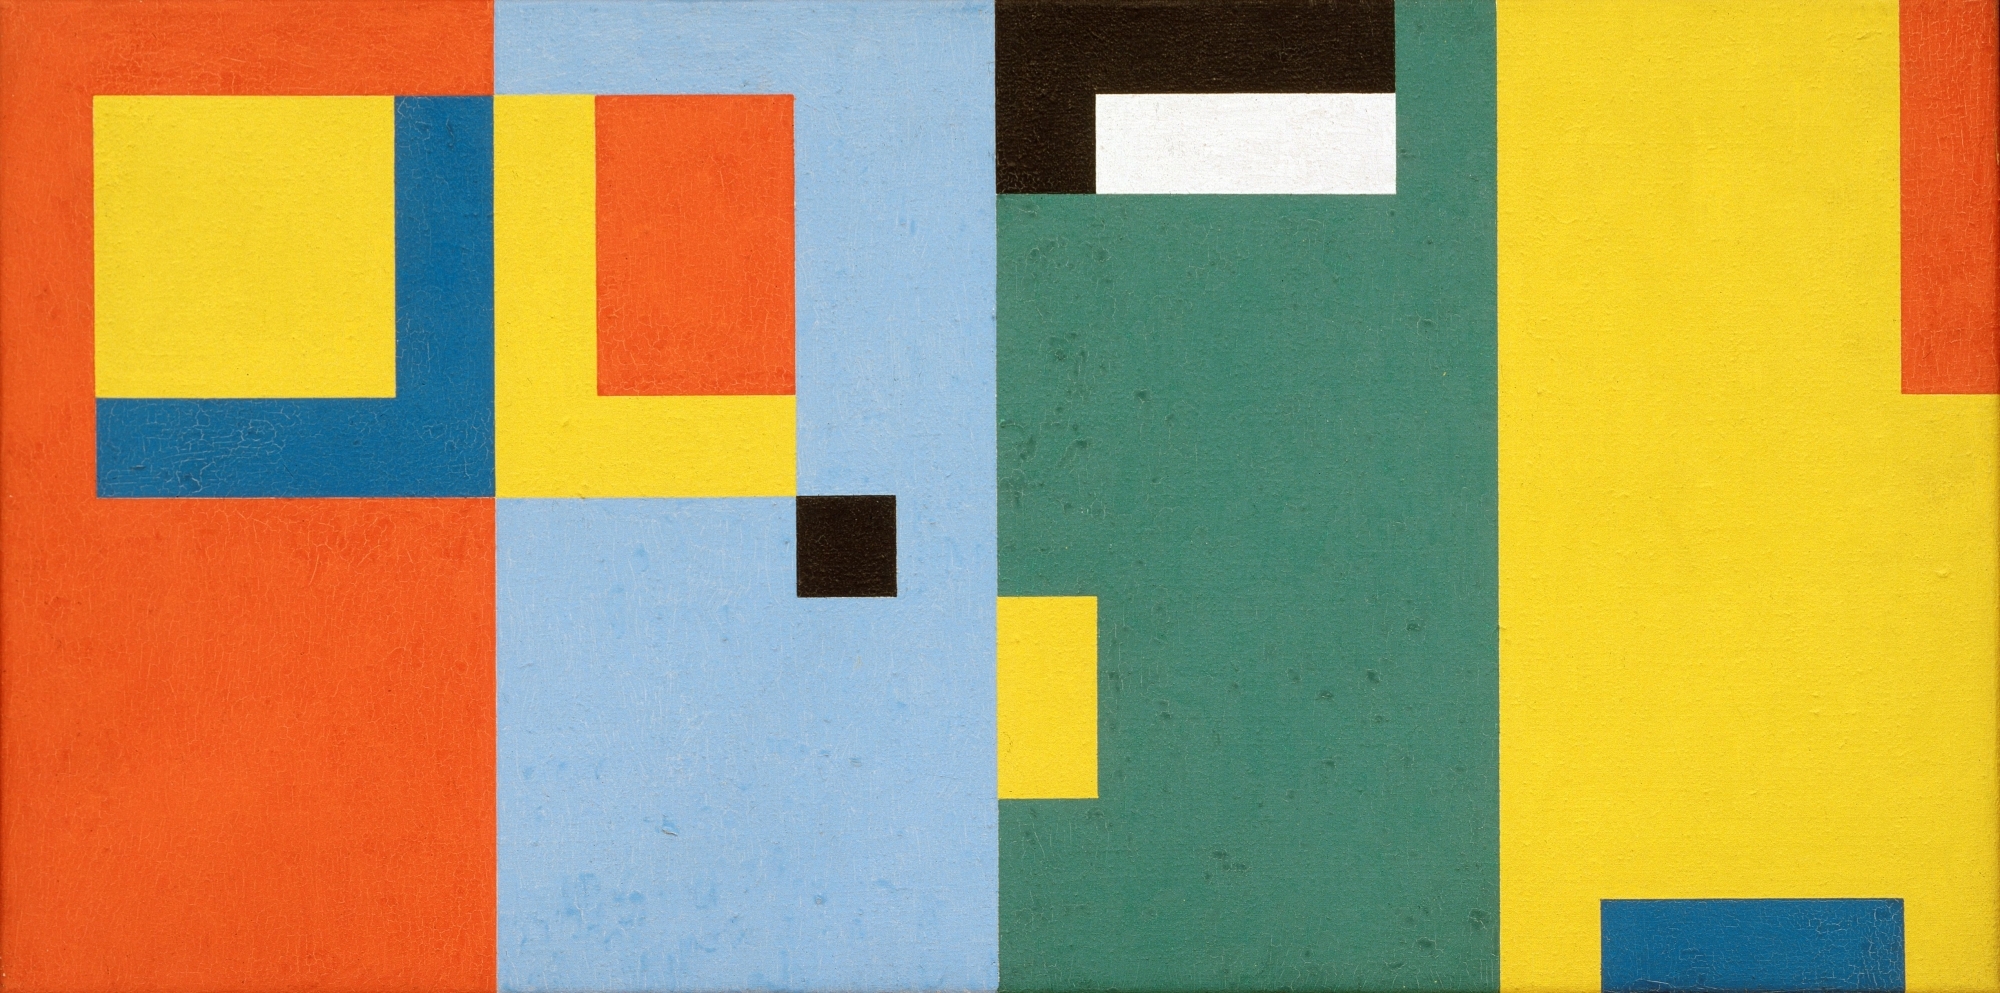 Camille Graeser, "Progression en quatre espaces", 1952, dispersion de résine sur toile, 40x80 cm.